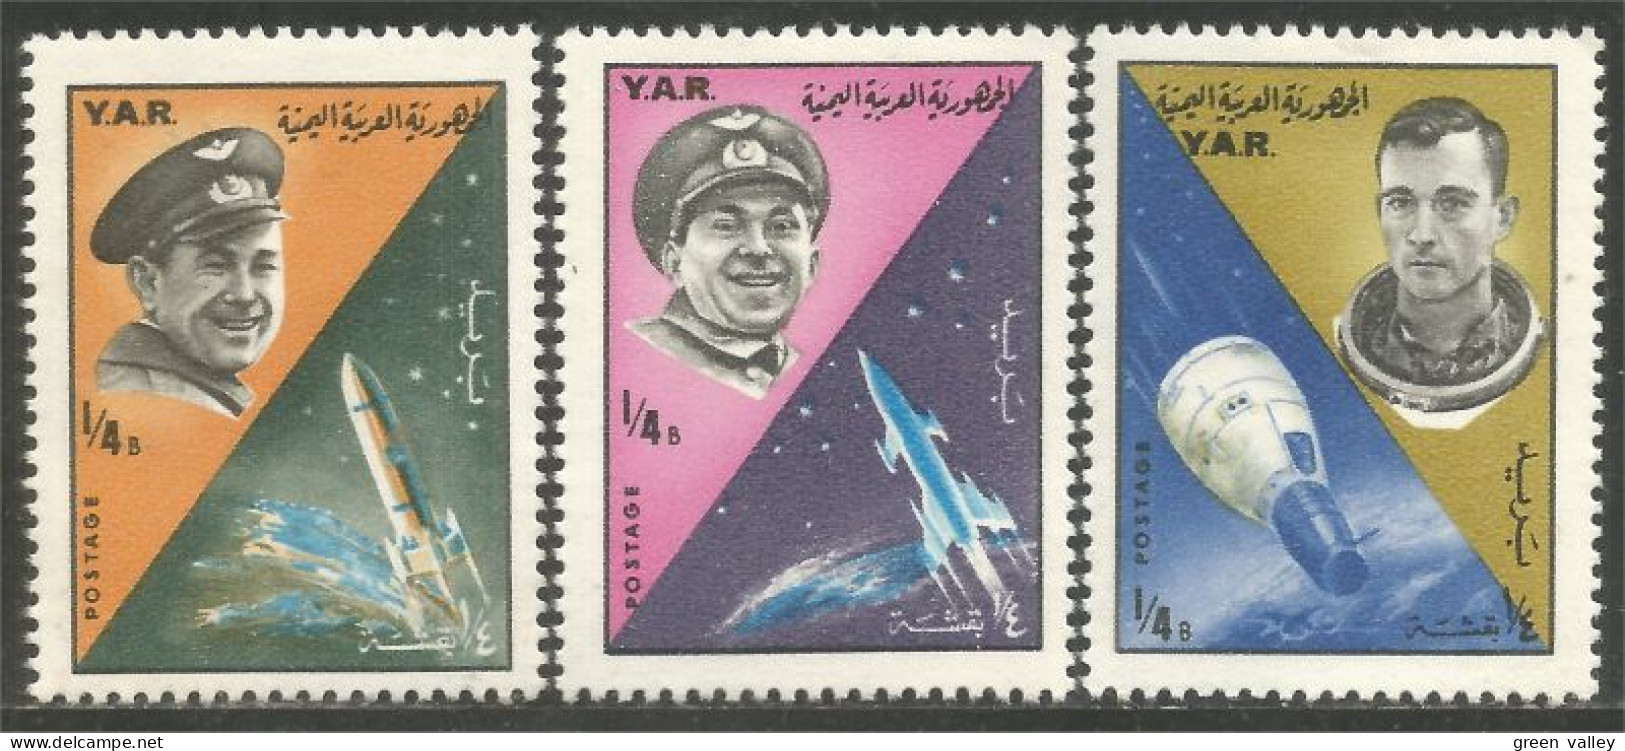 950 Yemen Espace Cosmonautes Russes Russian Cosmonauts Space MH * Neuf (YEM-64) - Yémen